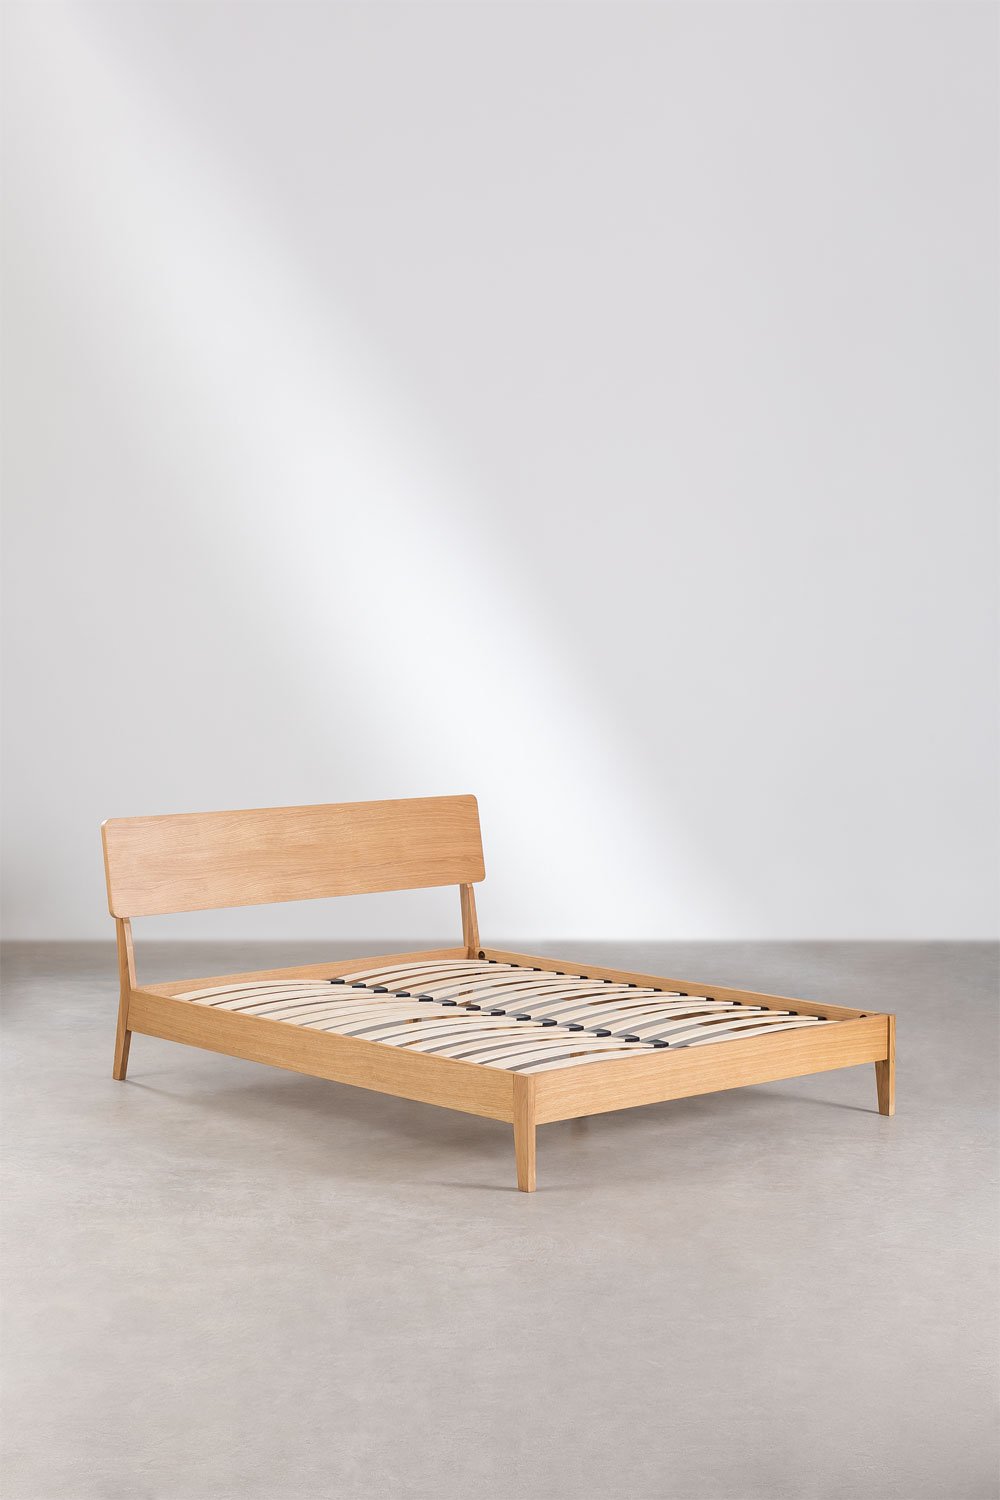 Drewniane łóżko Gellis, obrazek w galerii 2